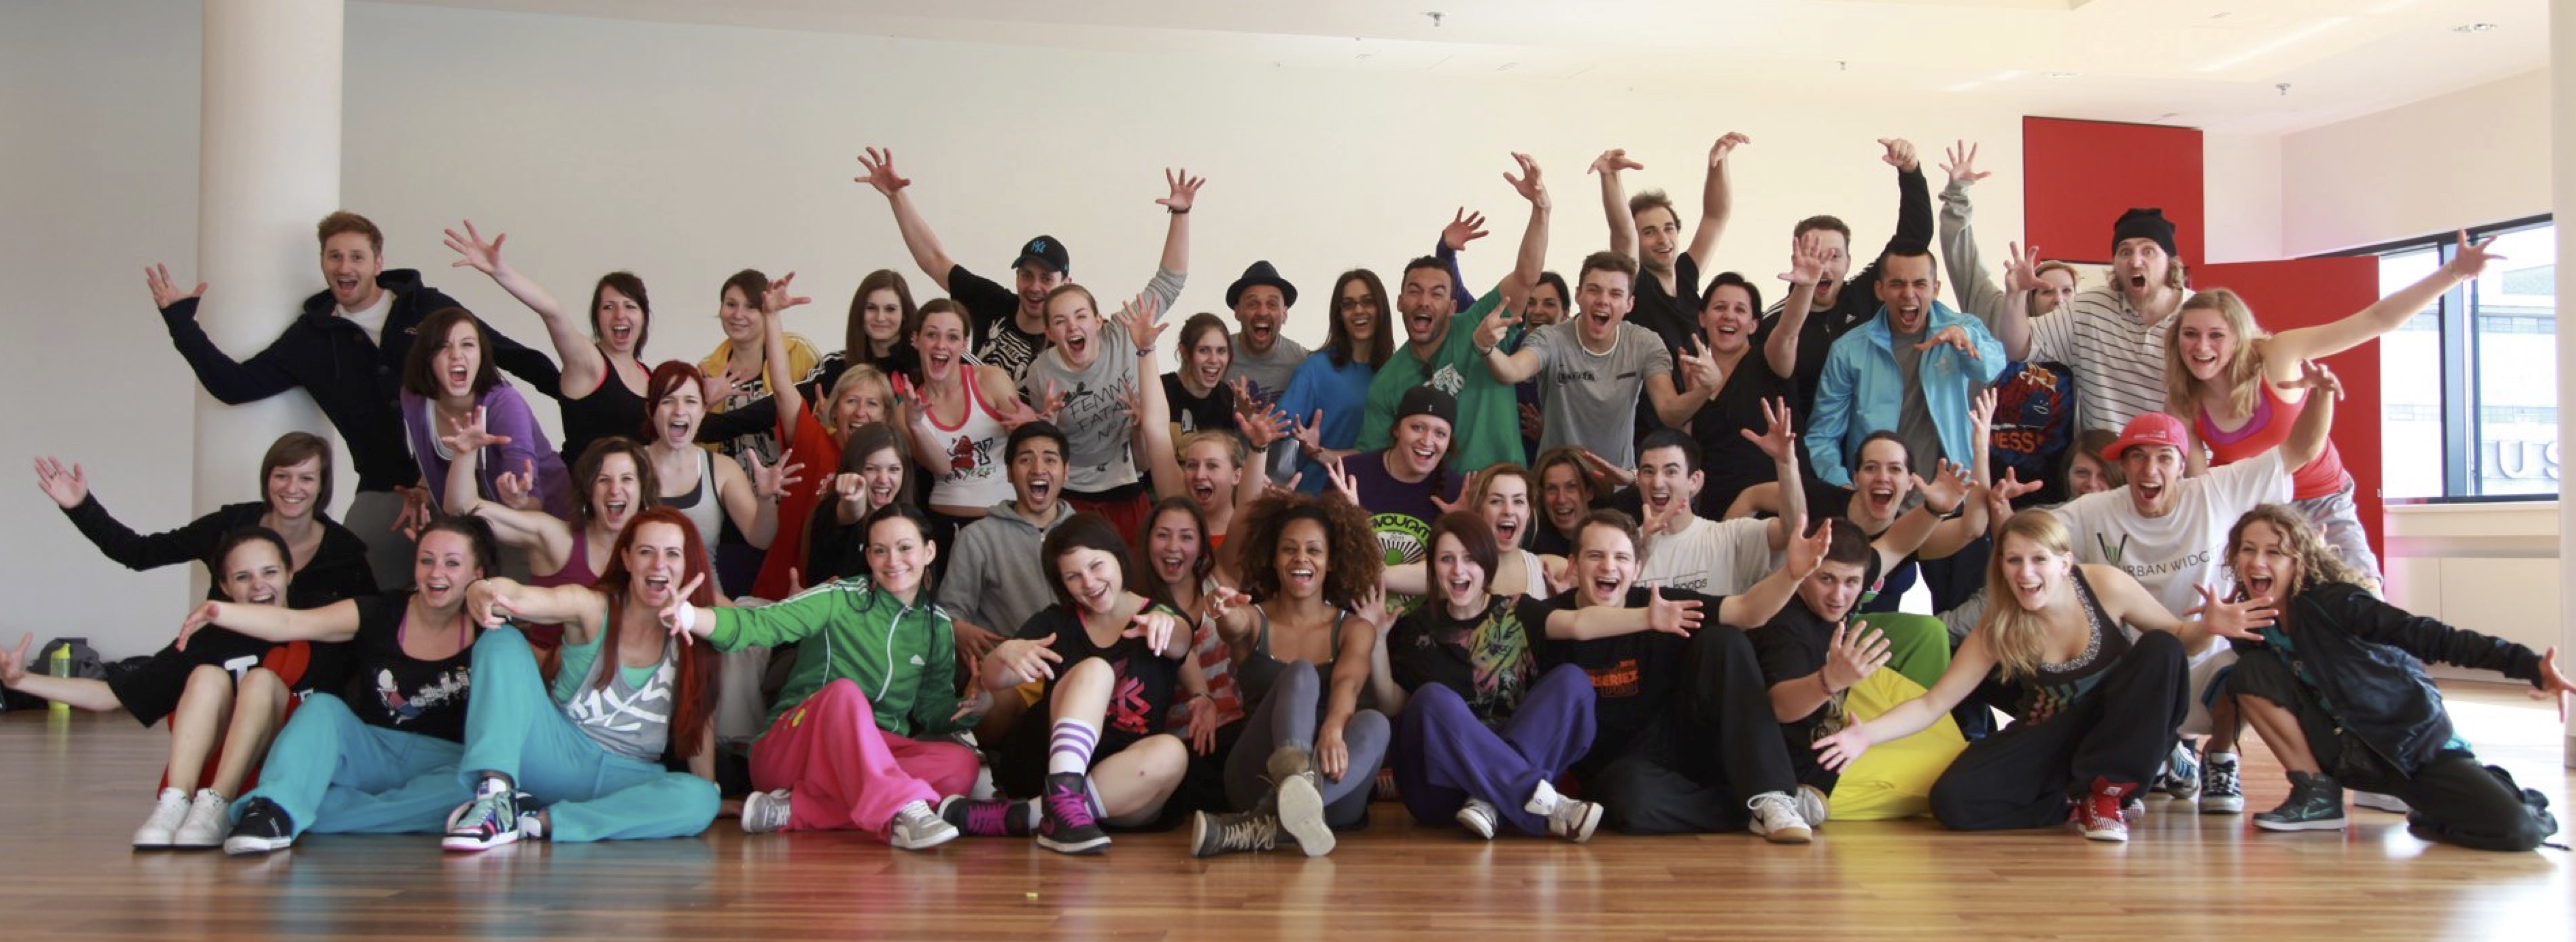 Masterseriez Pro | Lehrgang für urbanen Tanz